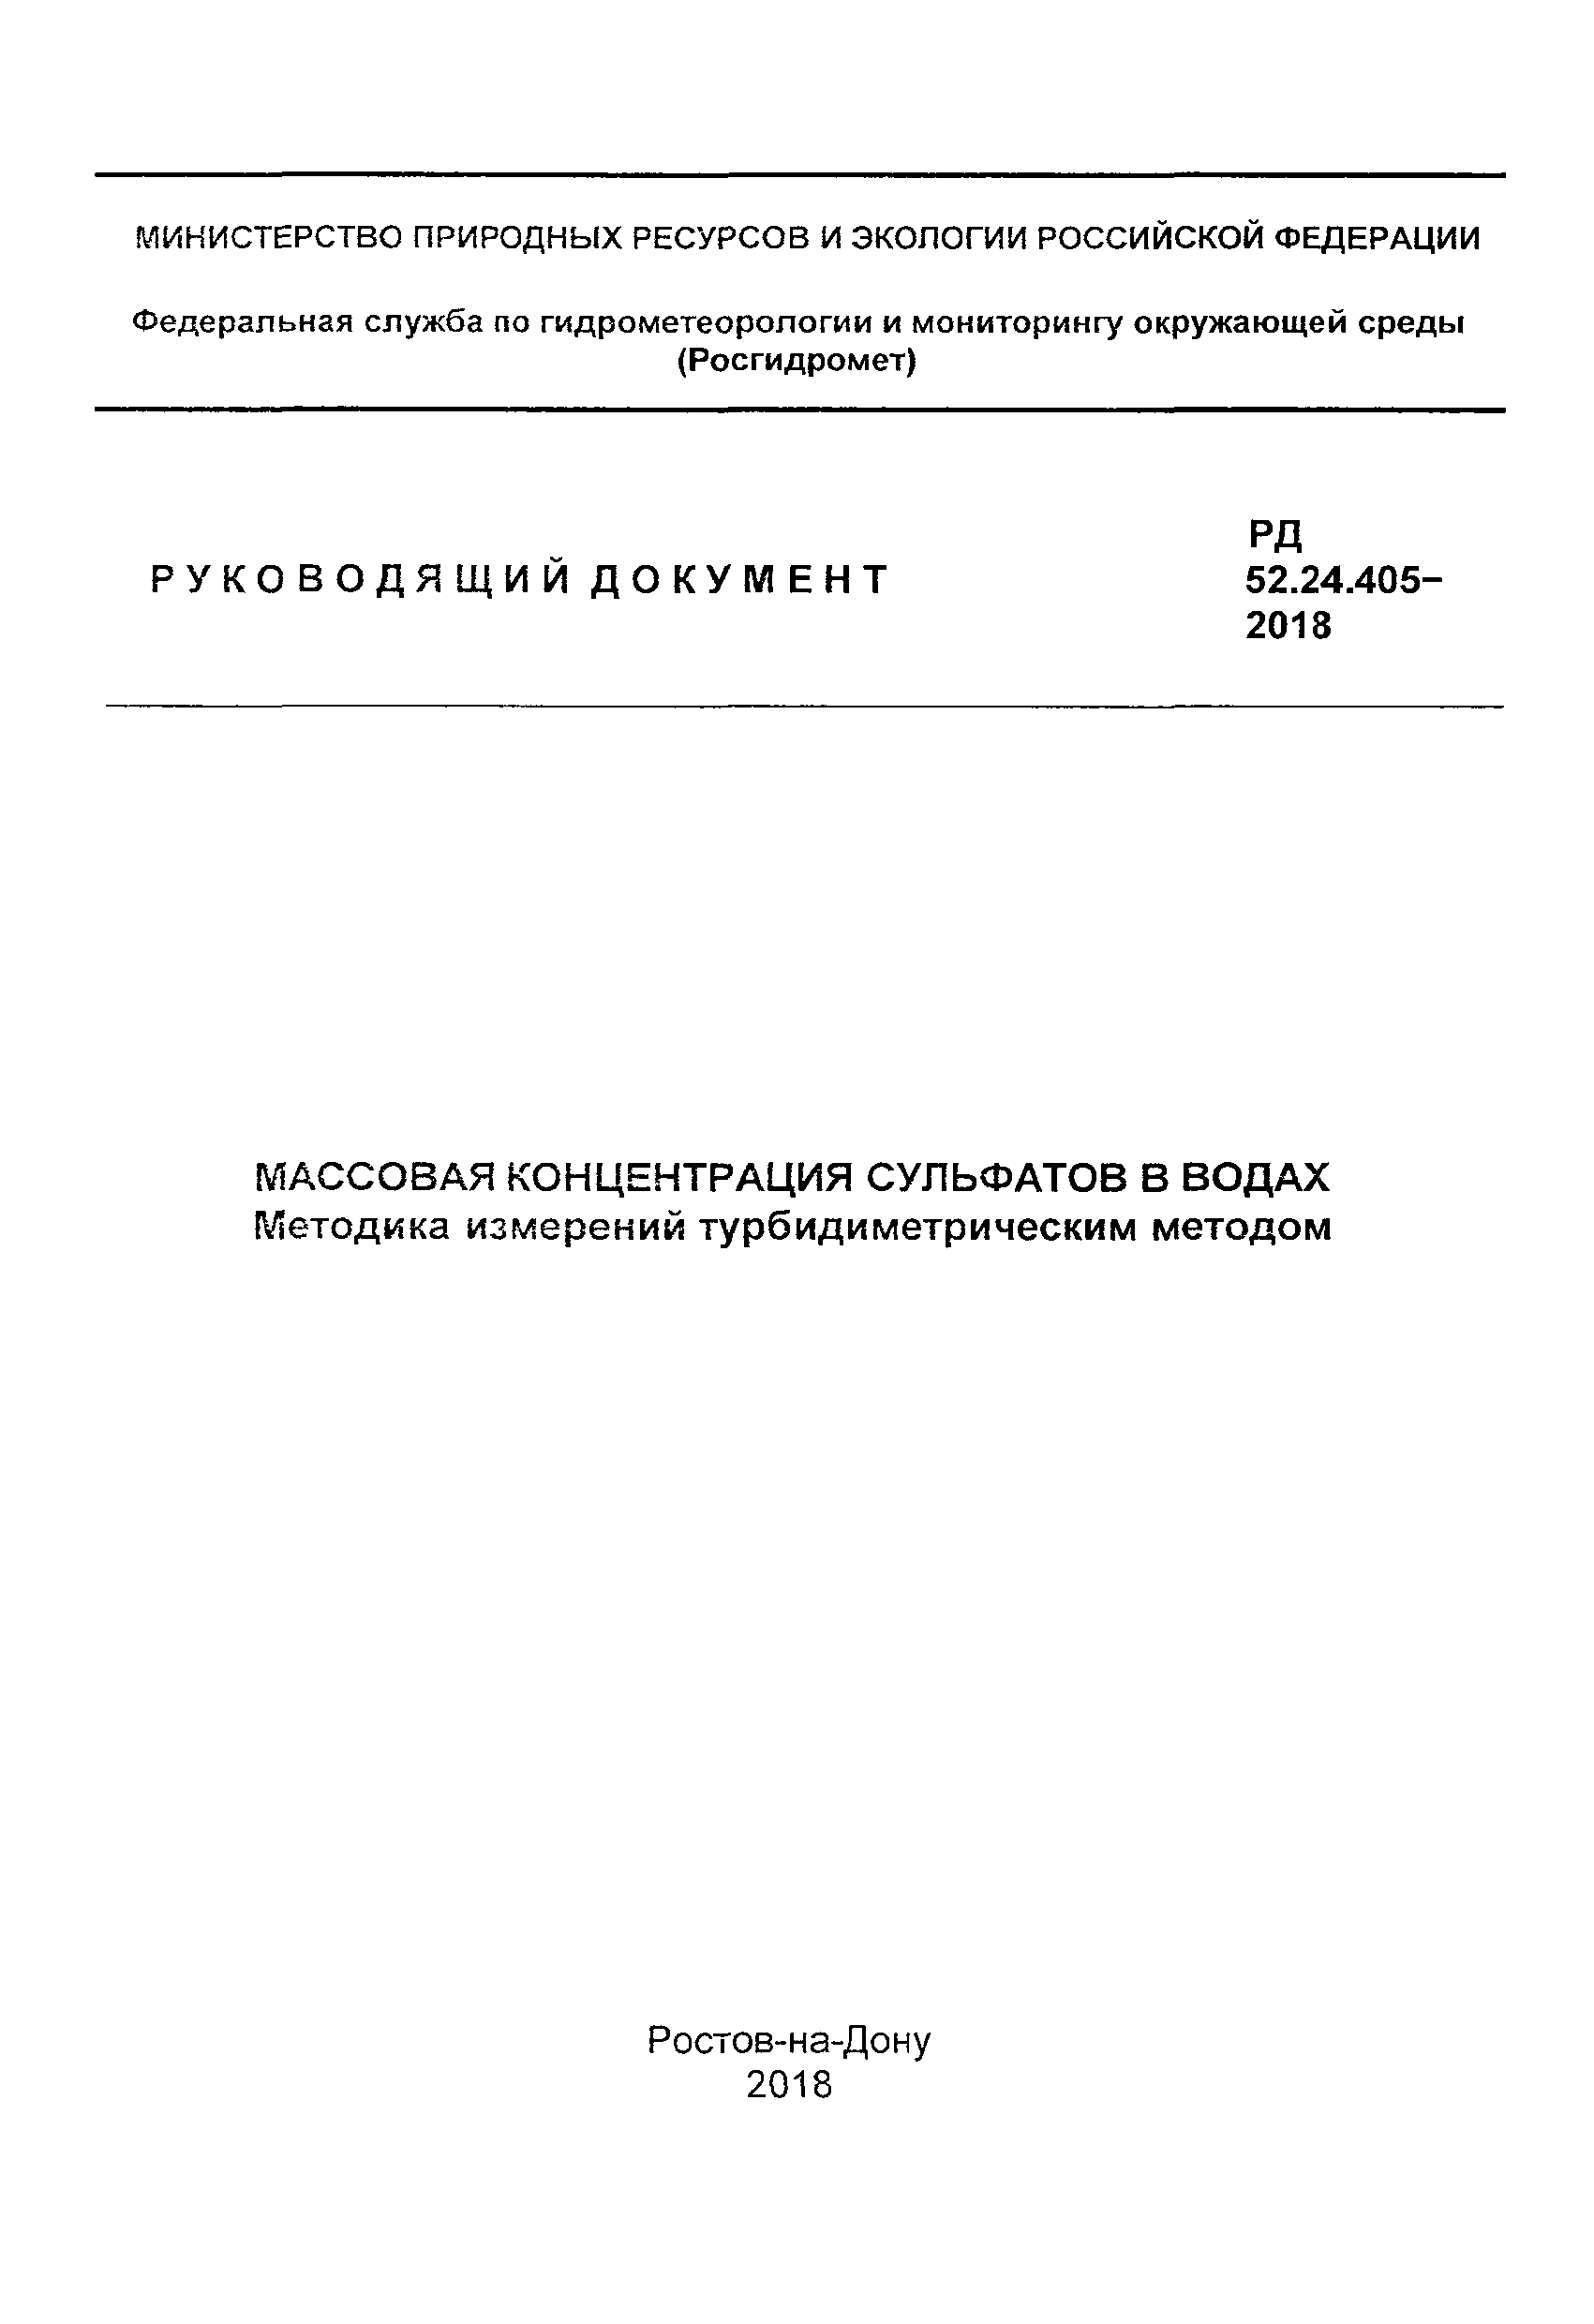 РД 52.24.405-2018